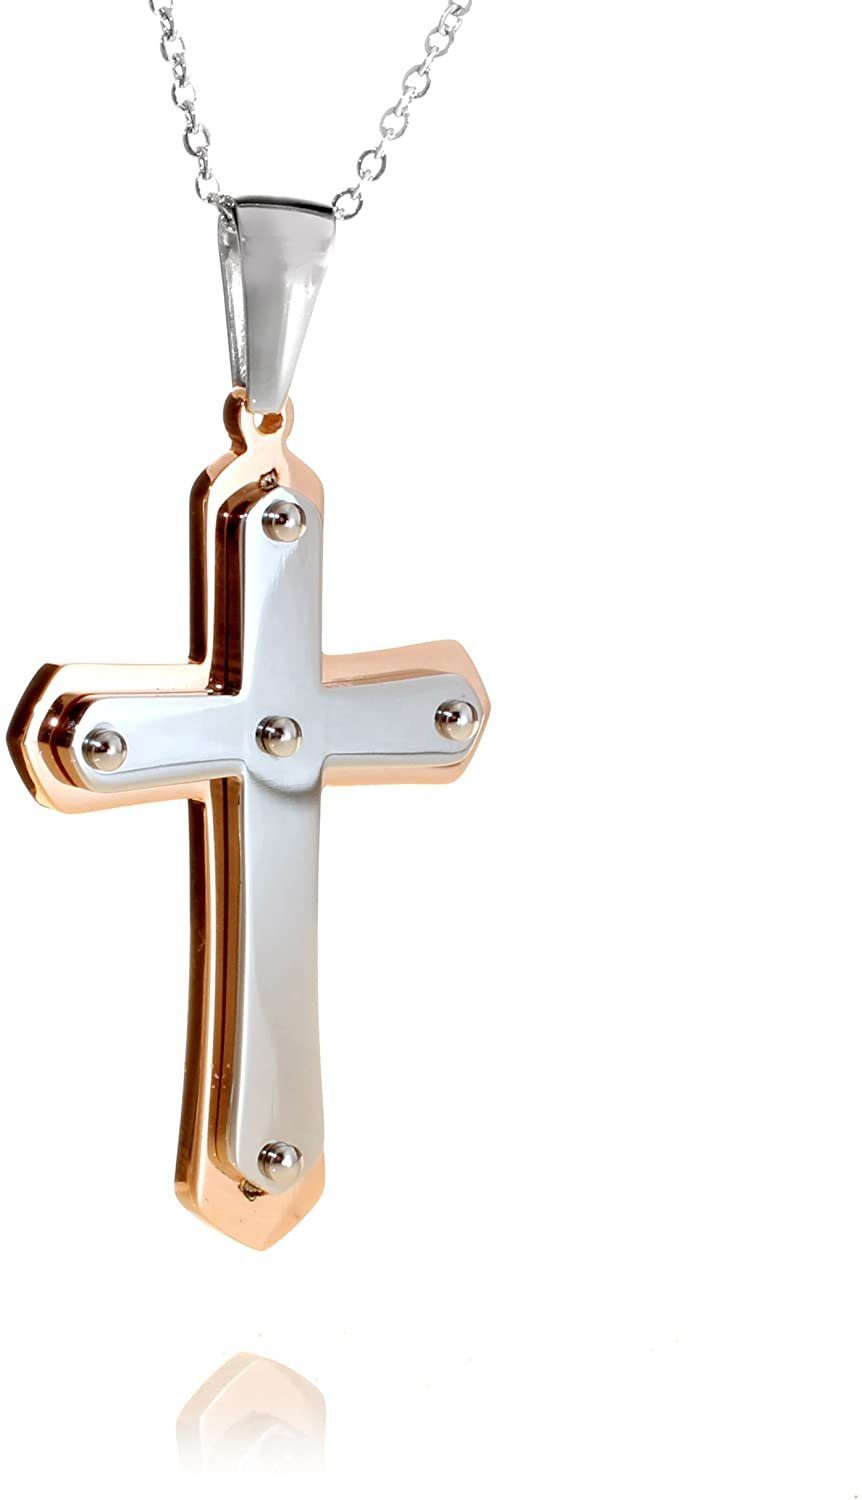 Karisma Kette mit Anhänger Karisma Edelstahl Kreuz Anhänger mit Rosé Gold Beschichtung und Edelstahl Kette - YSP260.RG - 45.0 Zentimeter